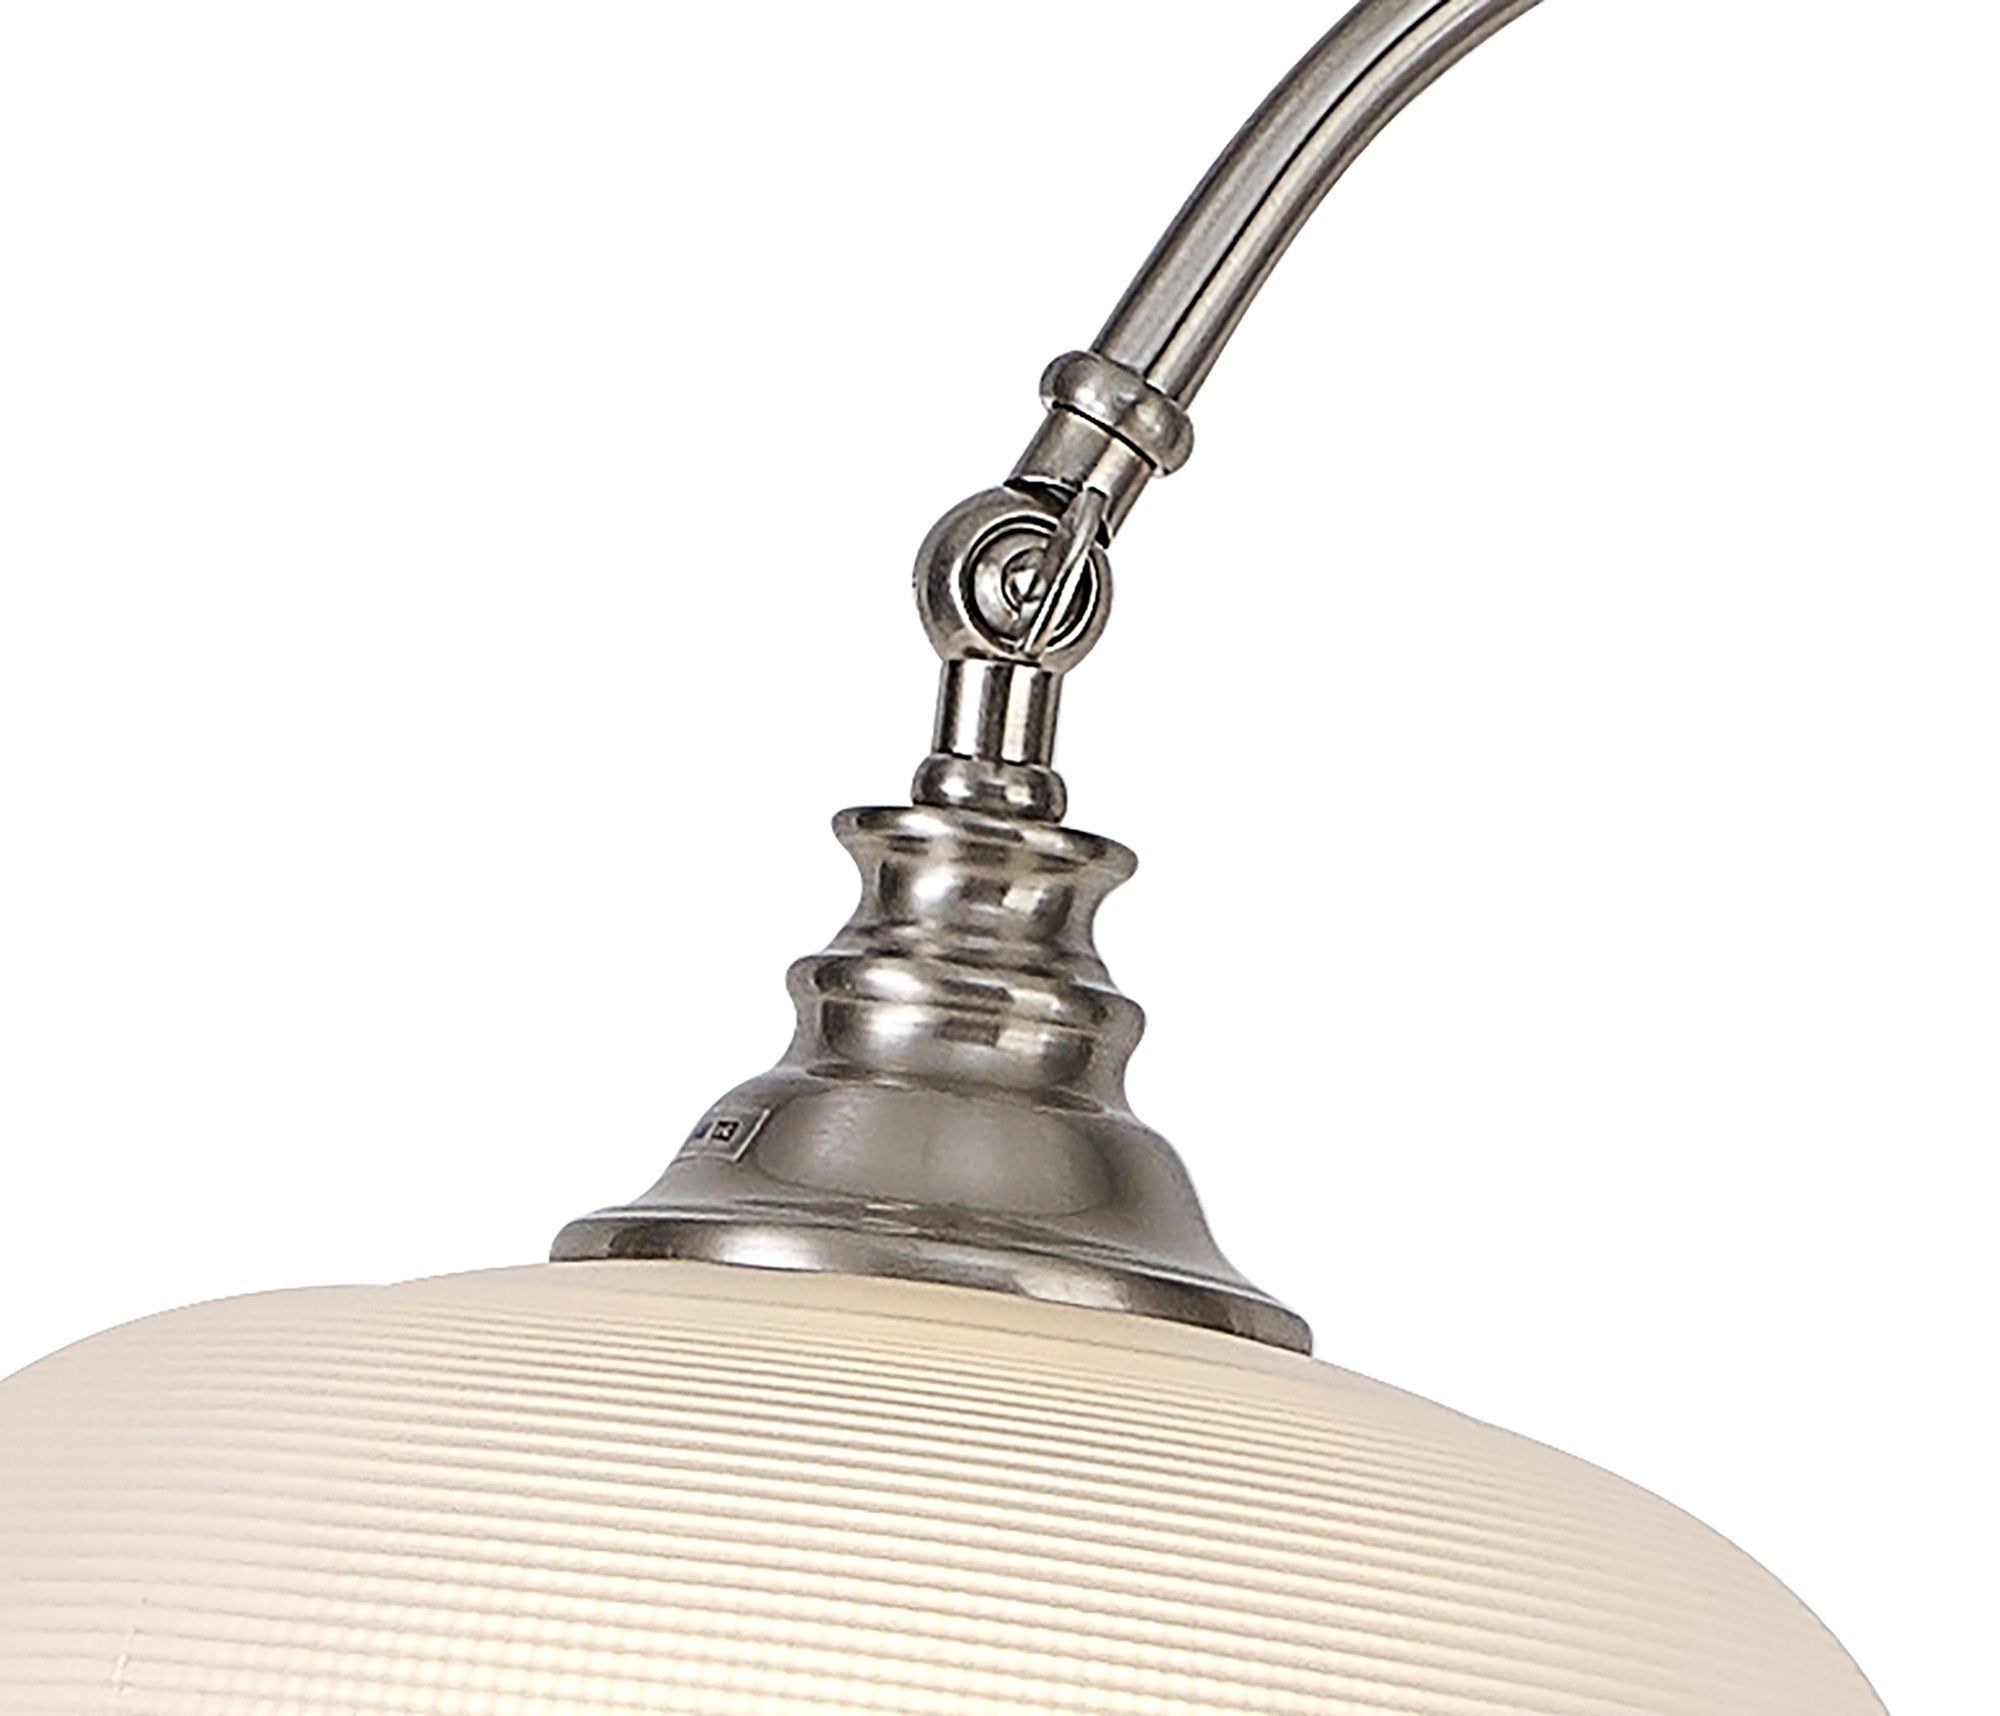 Isola Floor Lamp 1 Light E27 Antique Brass / Prismatic Glass